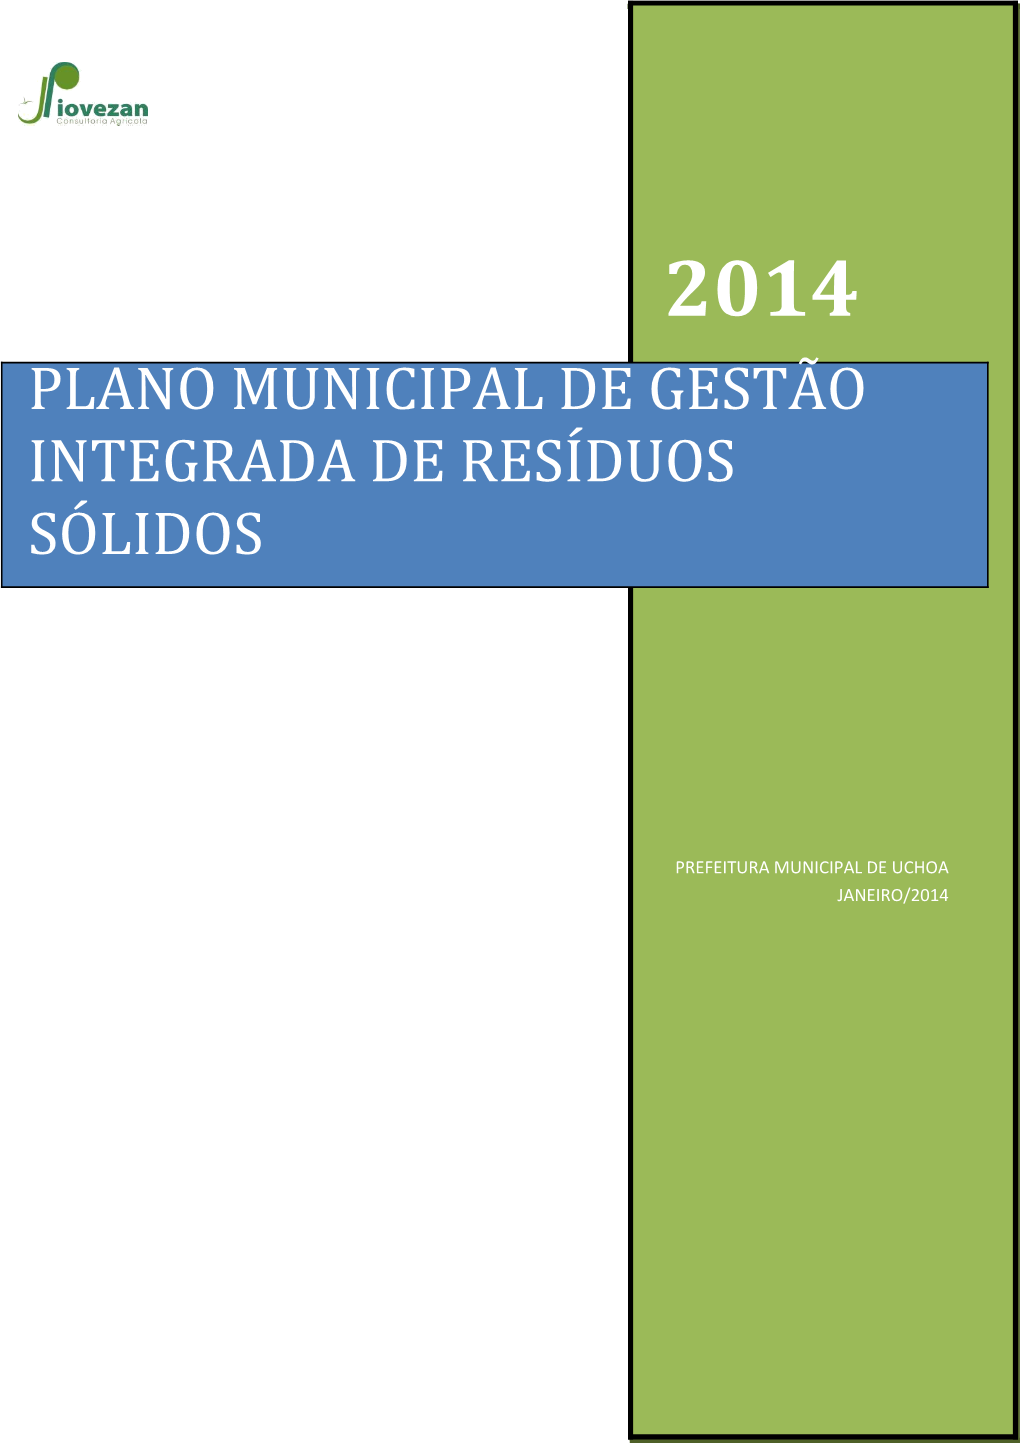 Plano Municipal De Gestão Integrada De Resíduos Sólidos De Uchoa-Sp